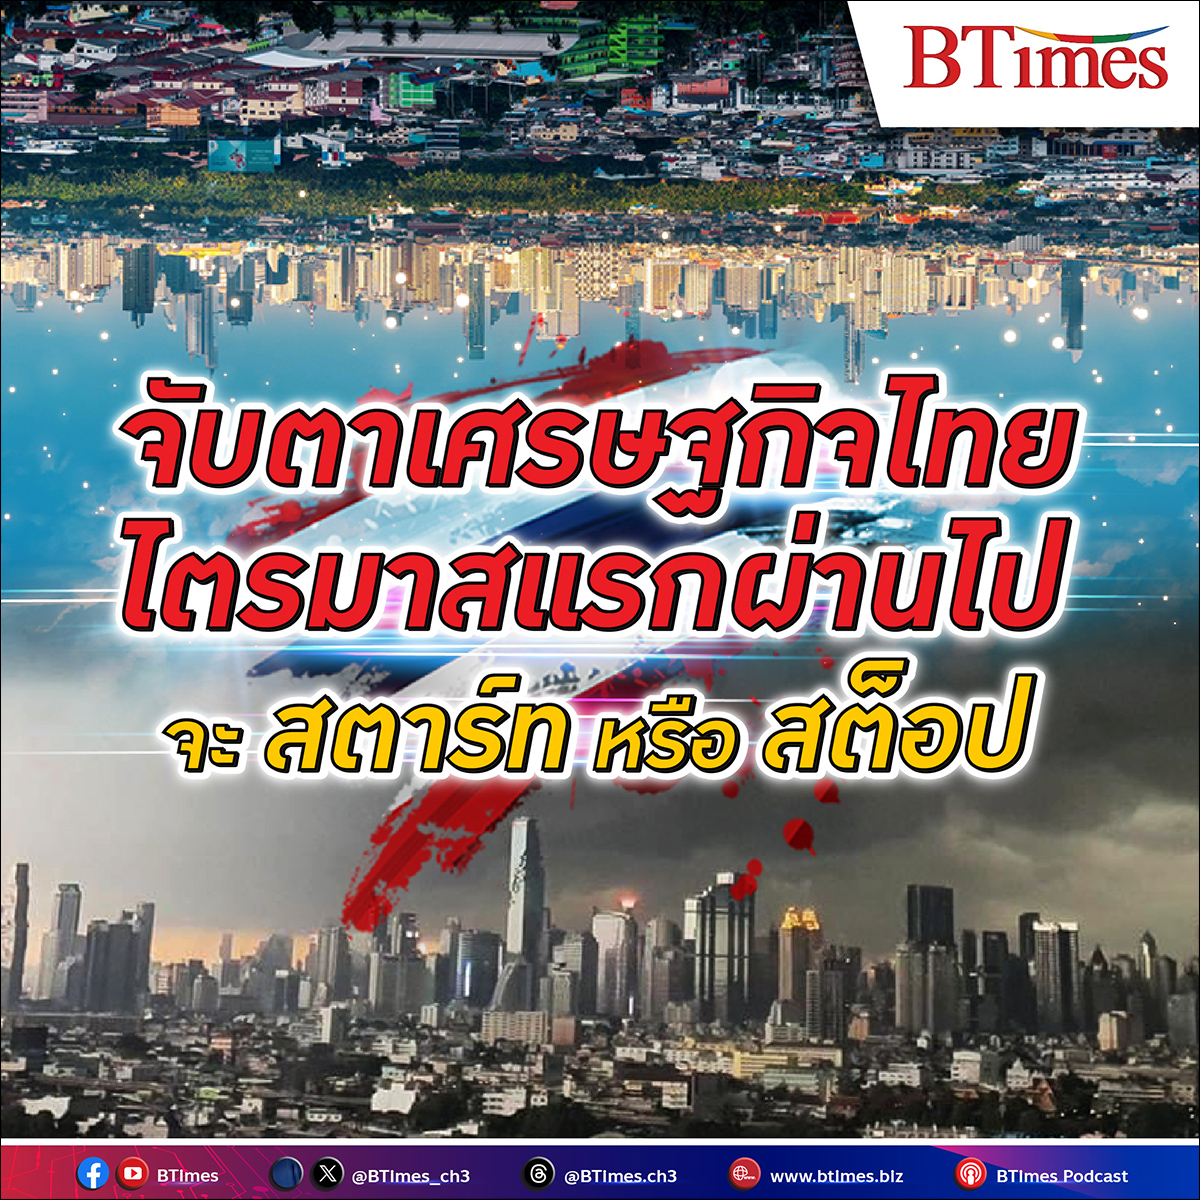 เศรษฐกิจไทย จะติดหล่มหรือติดไฟ ฟื้นตัวได้หรือไม่ ทั้งไตรมาสนี้และไตรมาส 2 หลังค่าแรง น้ำมัน หนี้ครัวเรือนช็อตฟีล ทำความเชื่อมั่นเอกชนสะดุด